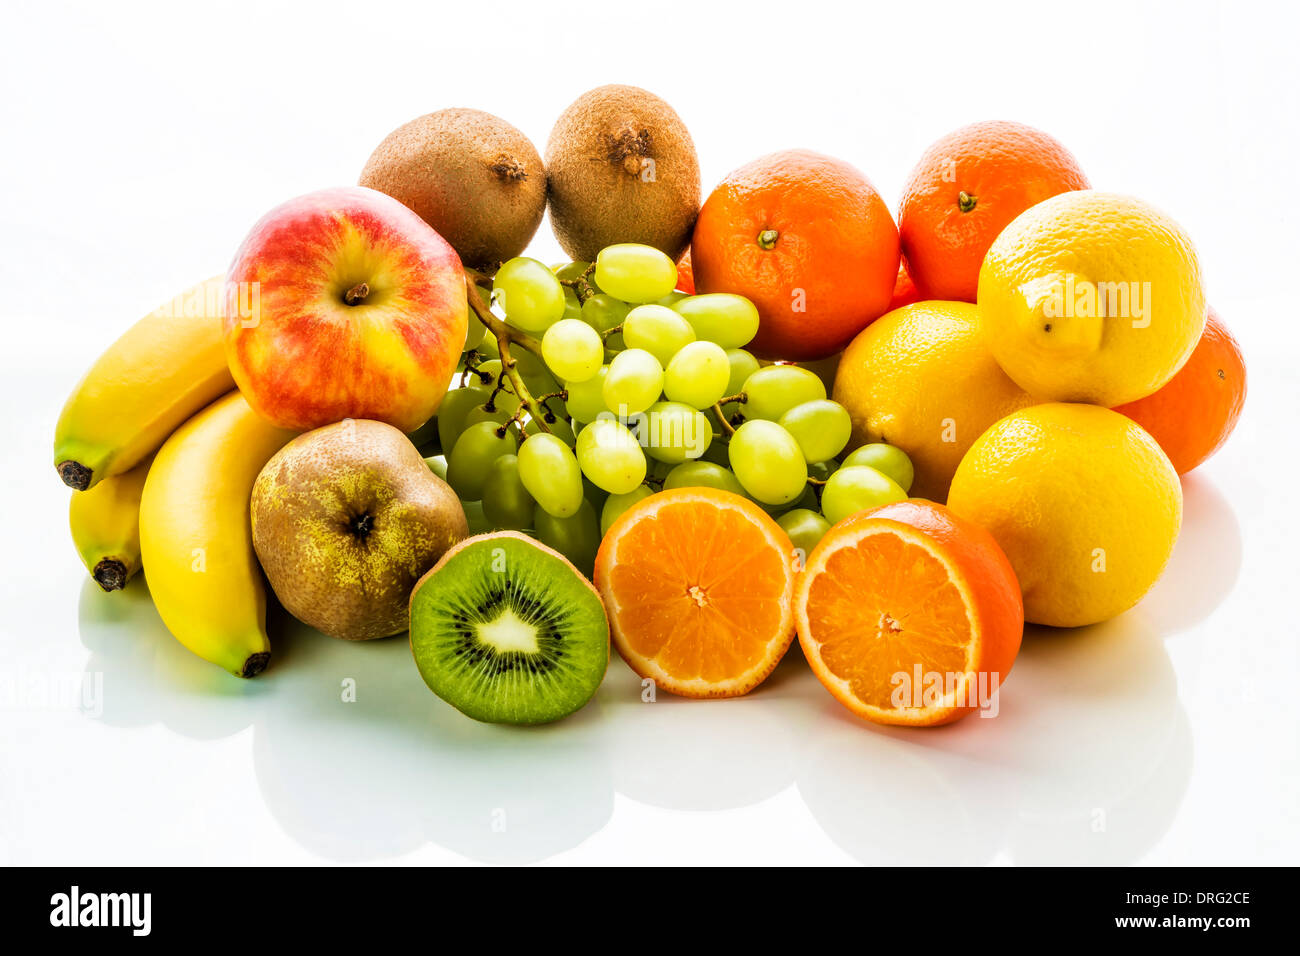 Image de fruits avec une pomme, mandarine, banane, citron vert, raisin, kiwi et poire sur fond blanc Banque D'Images